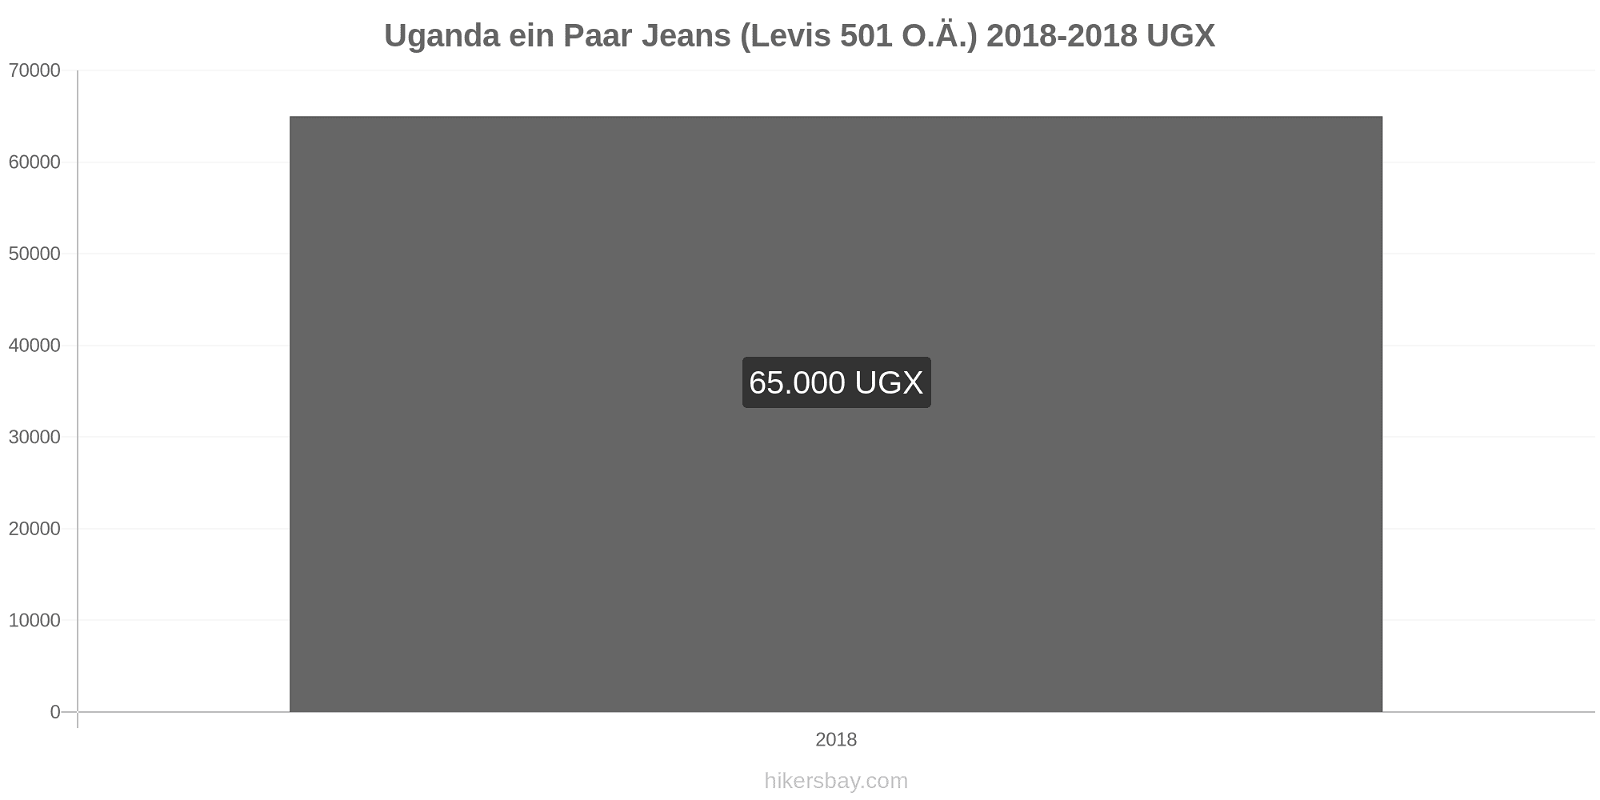 Uganda Preisänderungen 1 Paar Jeans (Levis 501 oder ähnliche) hikersbay.com